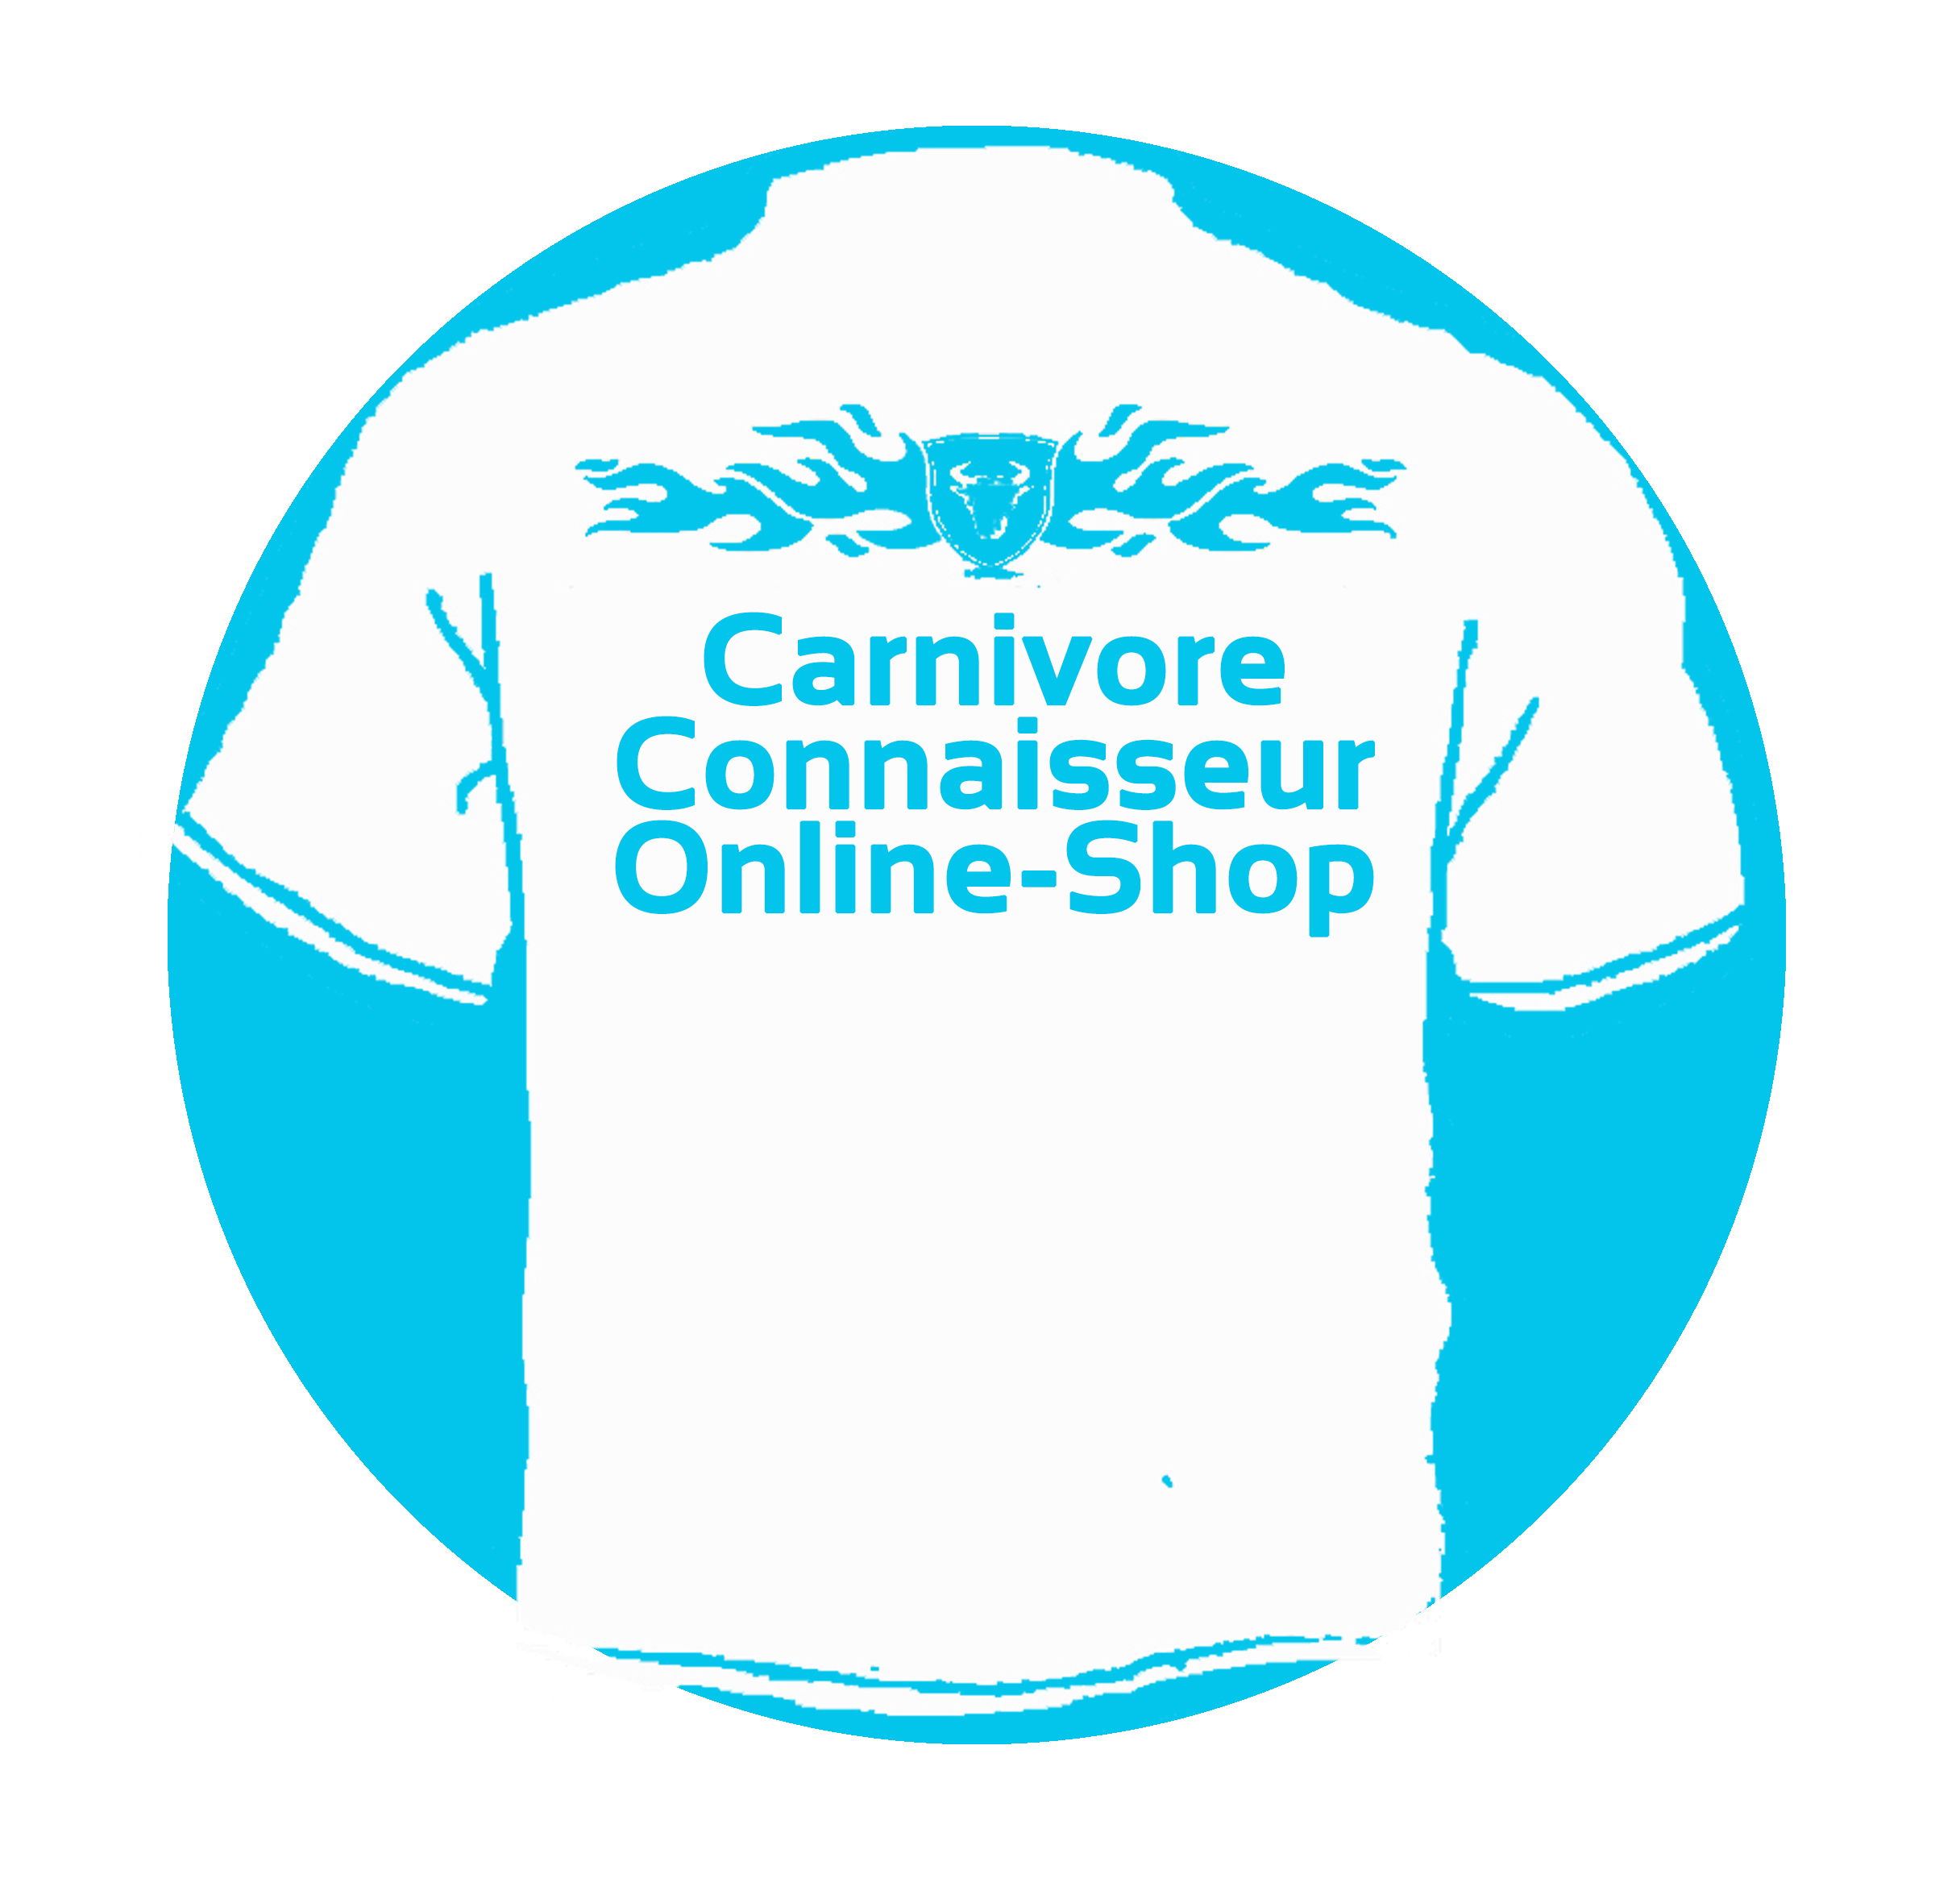 Carnivore Connaisseur Online-Shop